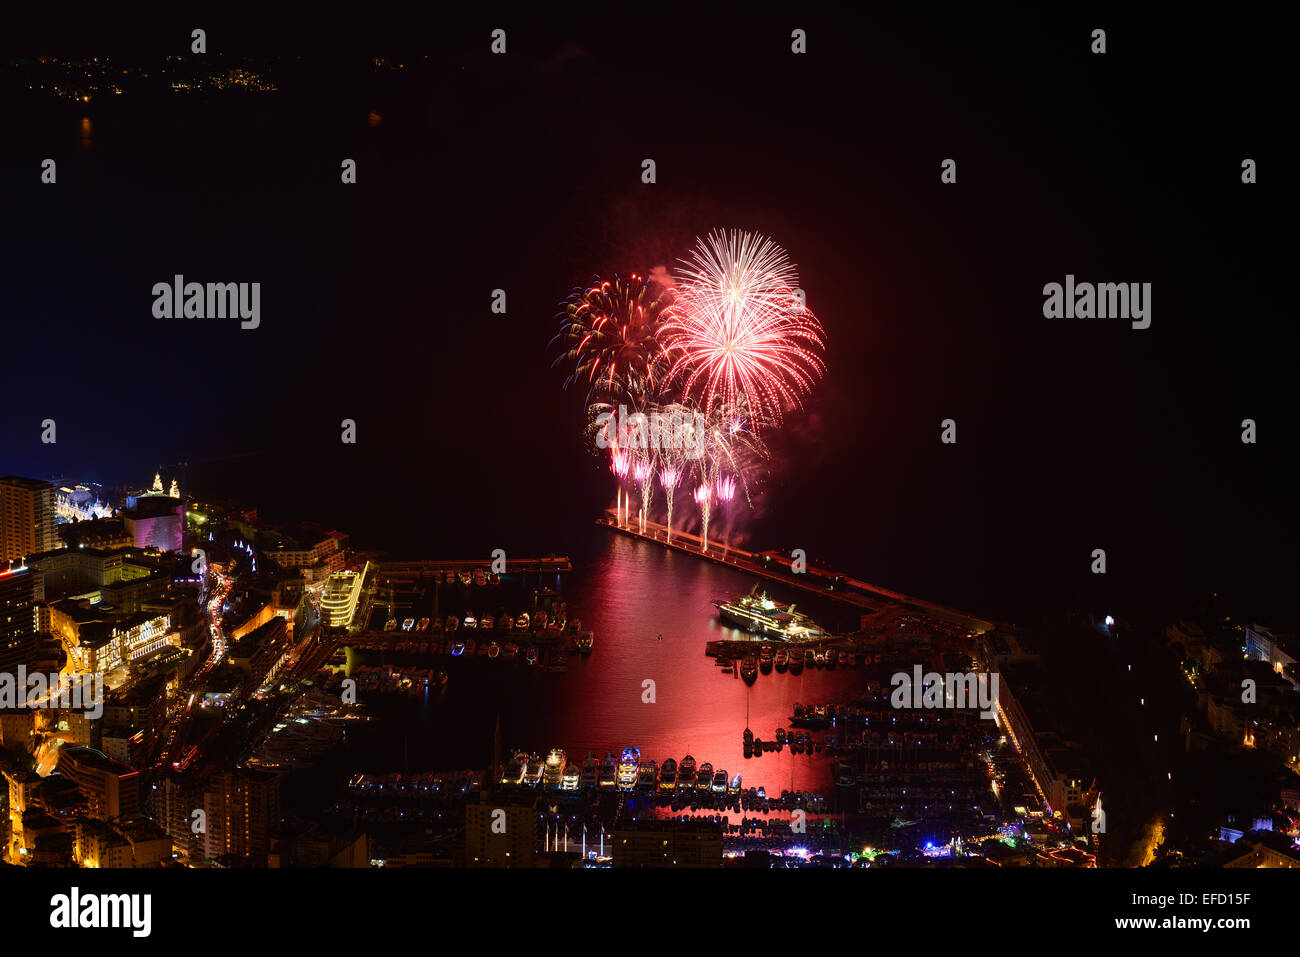 Feux d'artifice au-dessus de Port Hercule pour célébrer la nouvelle année (01/01/2015).Principauté de Monaco. Banque D'Images